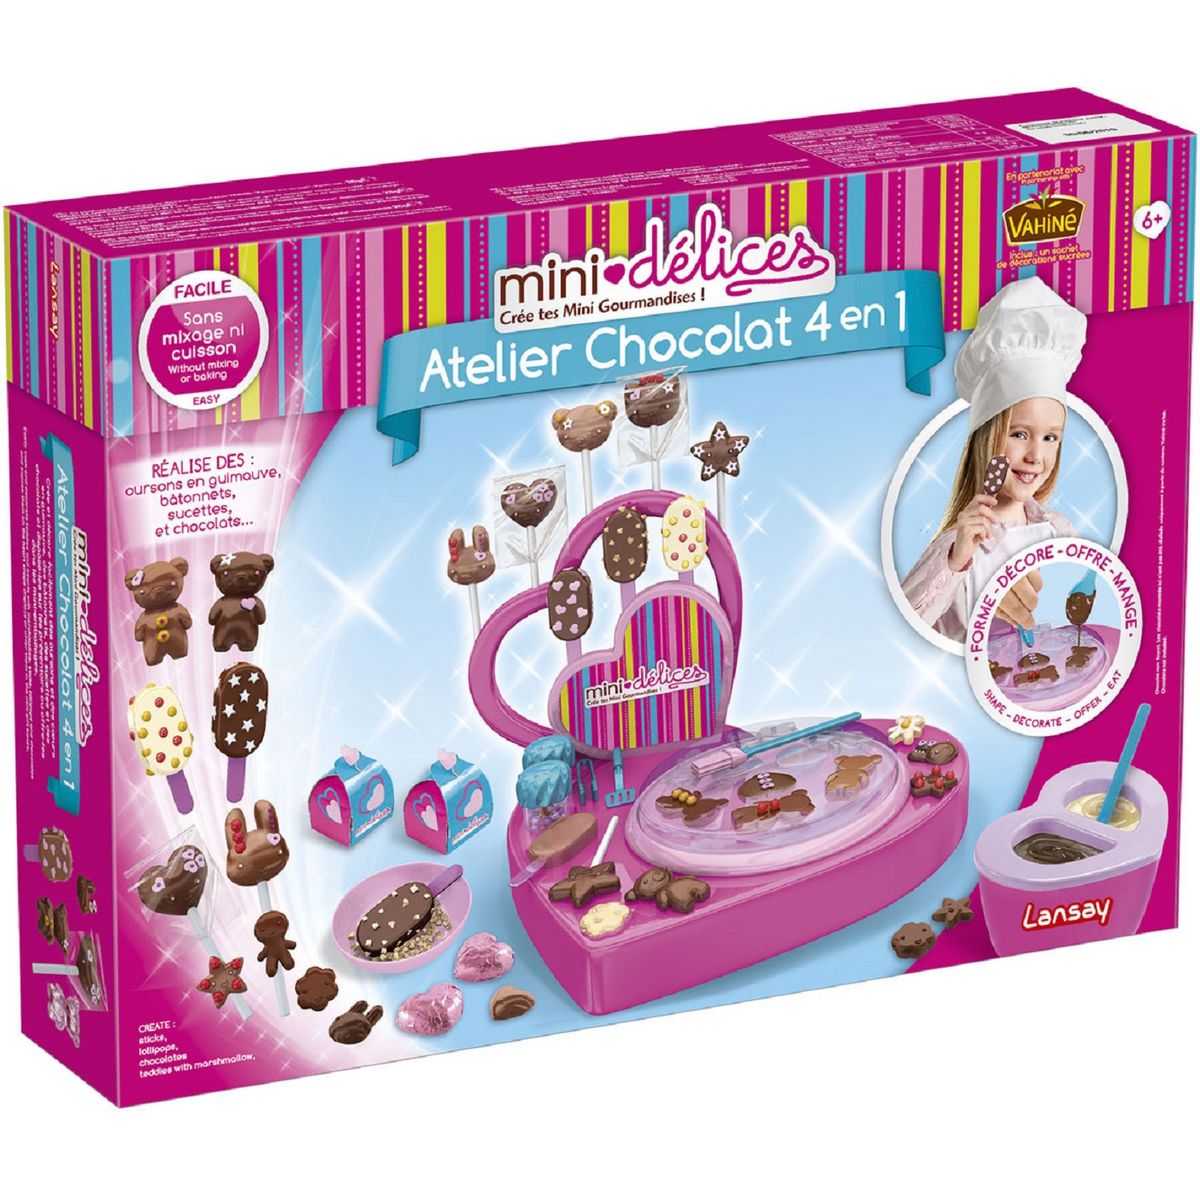 LANSAY Mini délices super atelier chocolat 4 en 1 pas cher 